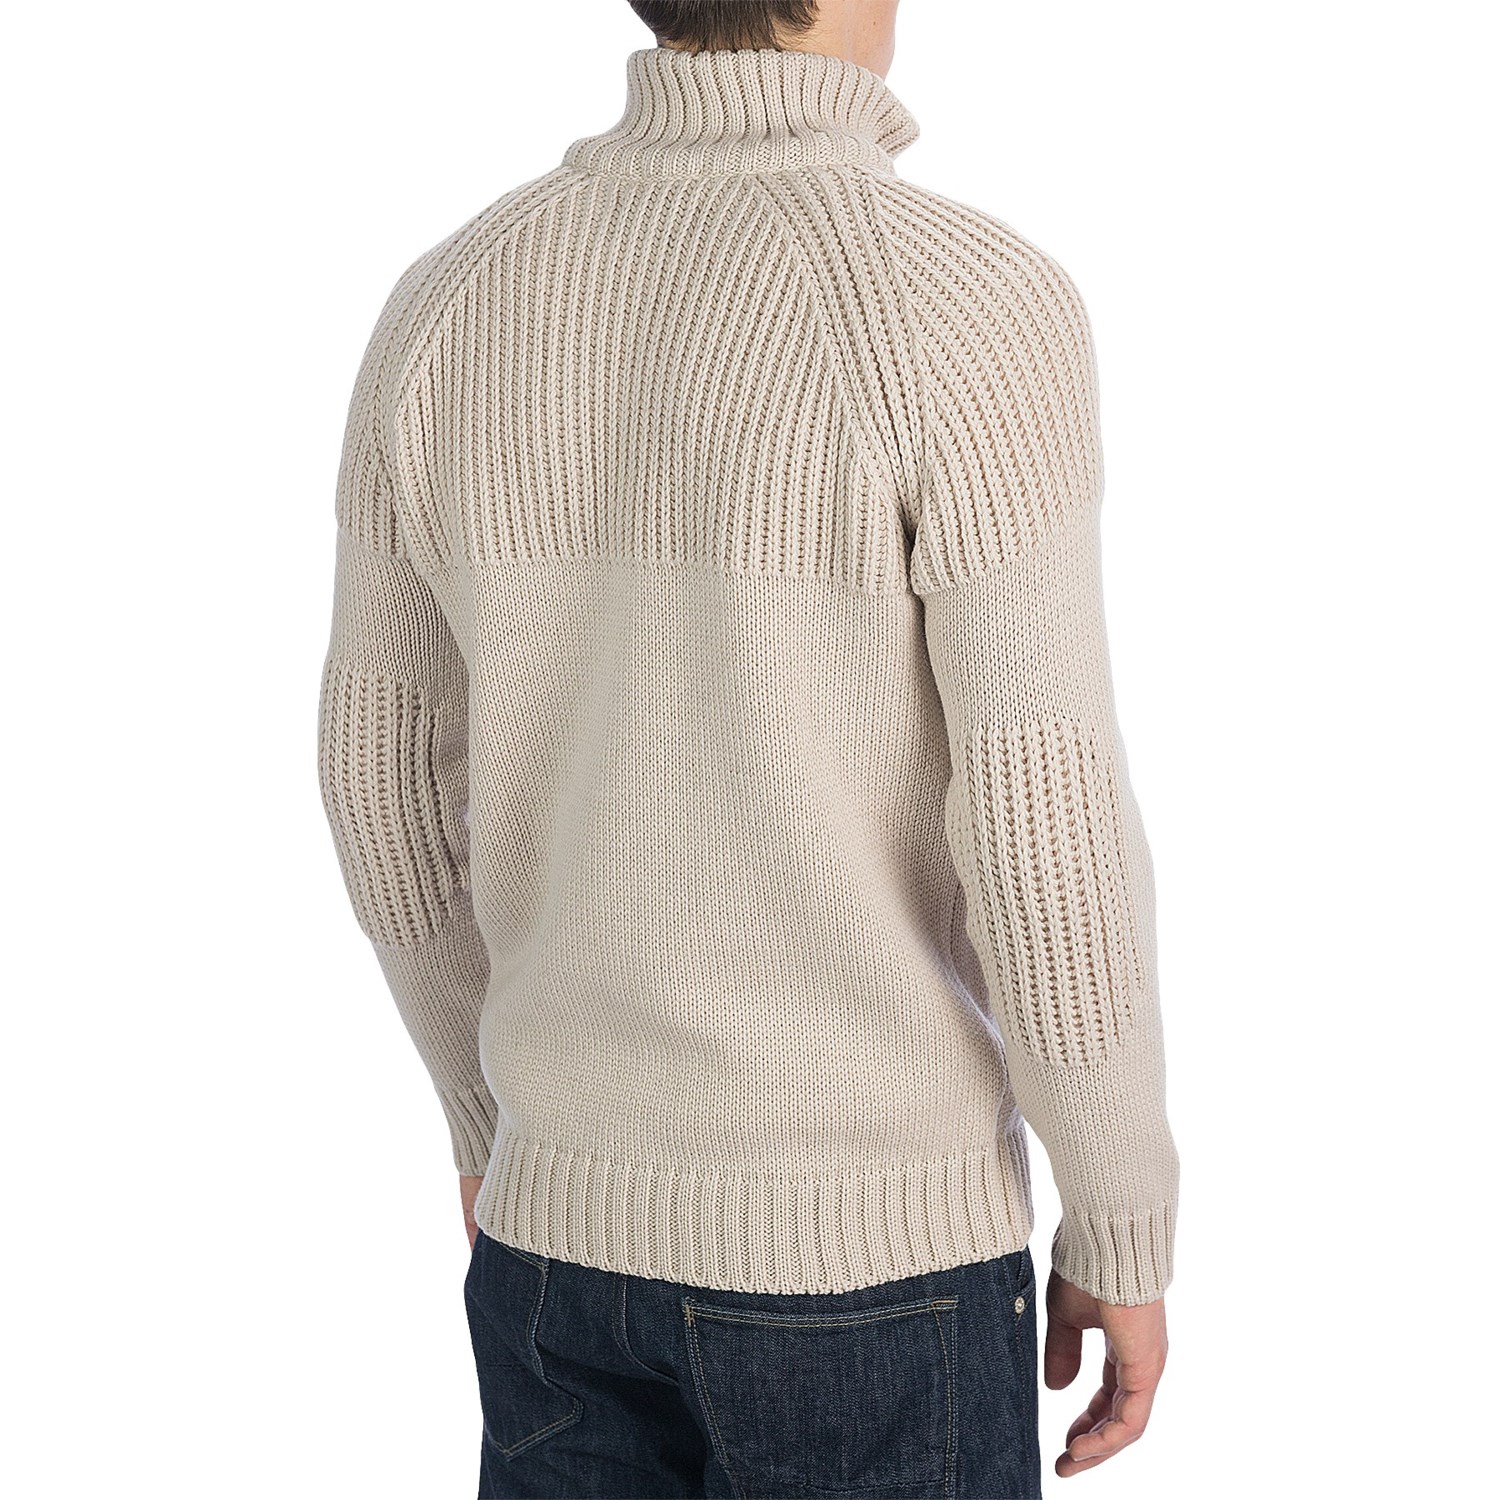 Wool sweaters, Sweaters, Merino wool sweater